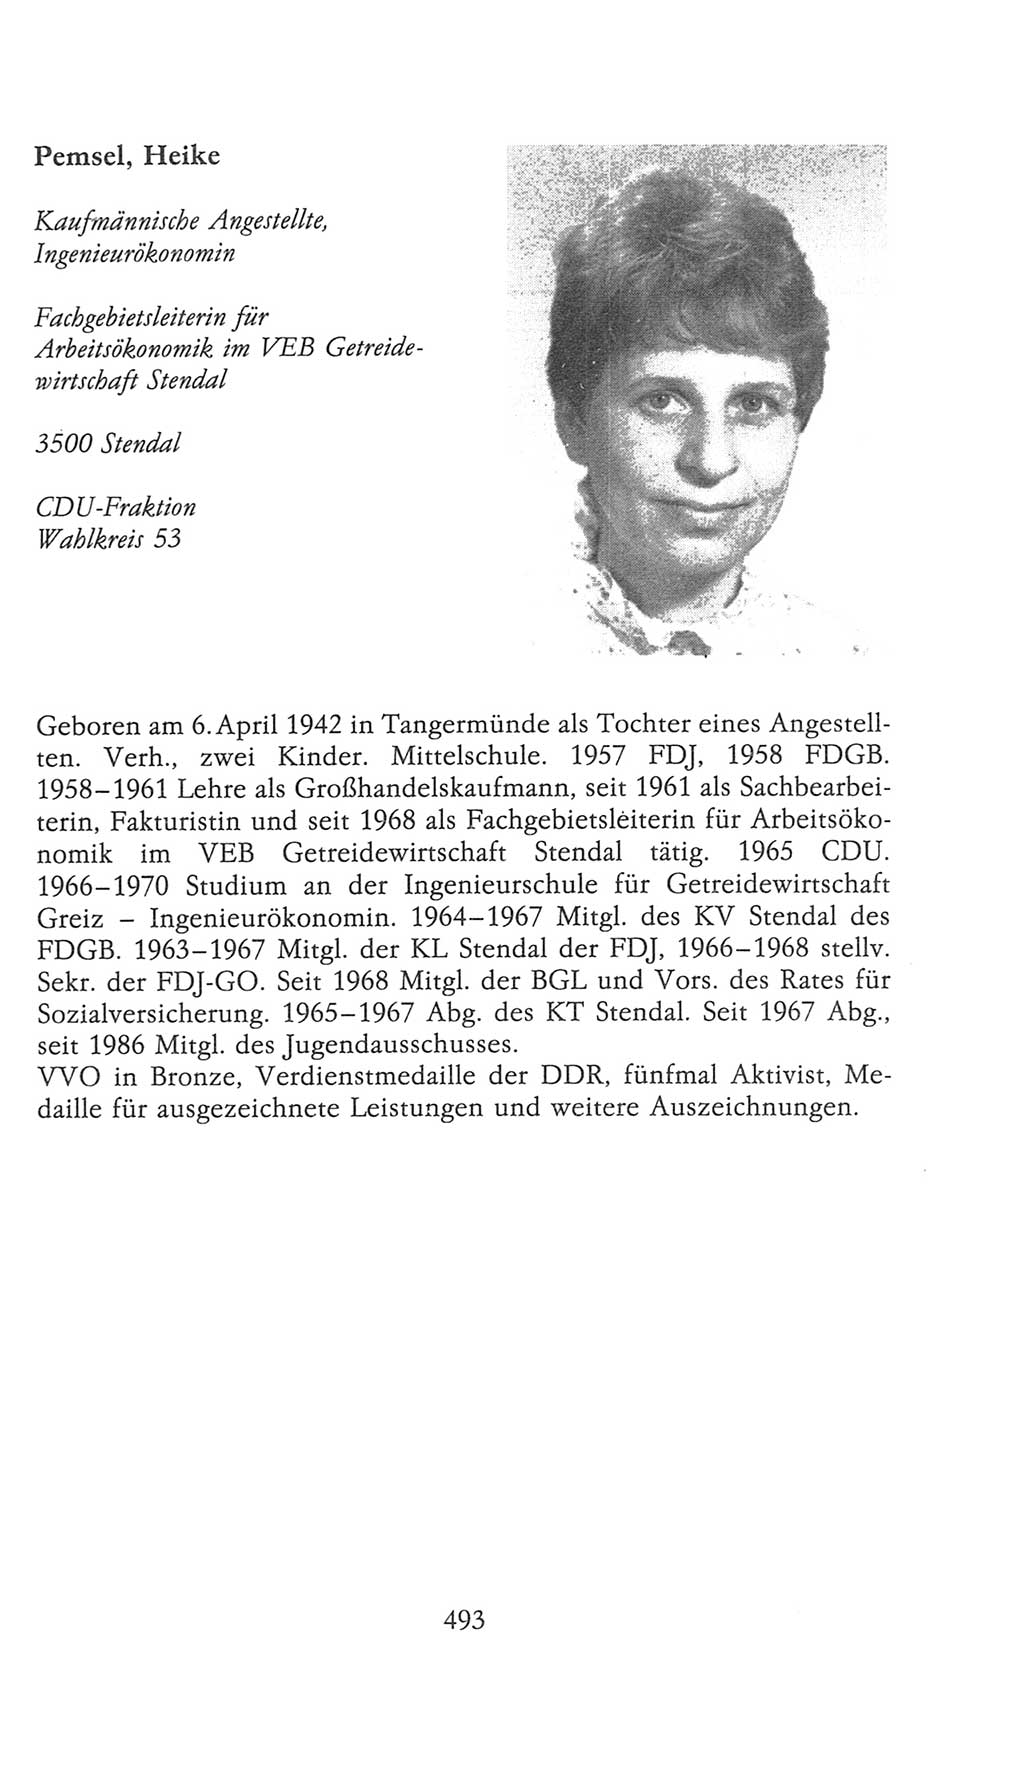 Volkskammer (VK) der Deutschen Demokratischen Republik (DDR), 9. Wahlperiode 1986-1990, Seite 493 (VK. DDR 9. WP. 1986-1990, S. 493)